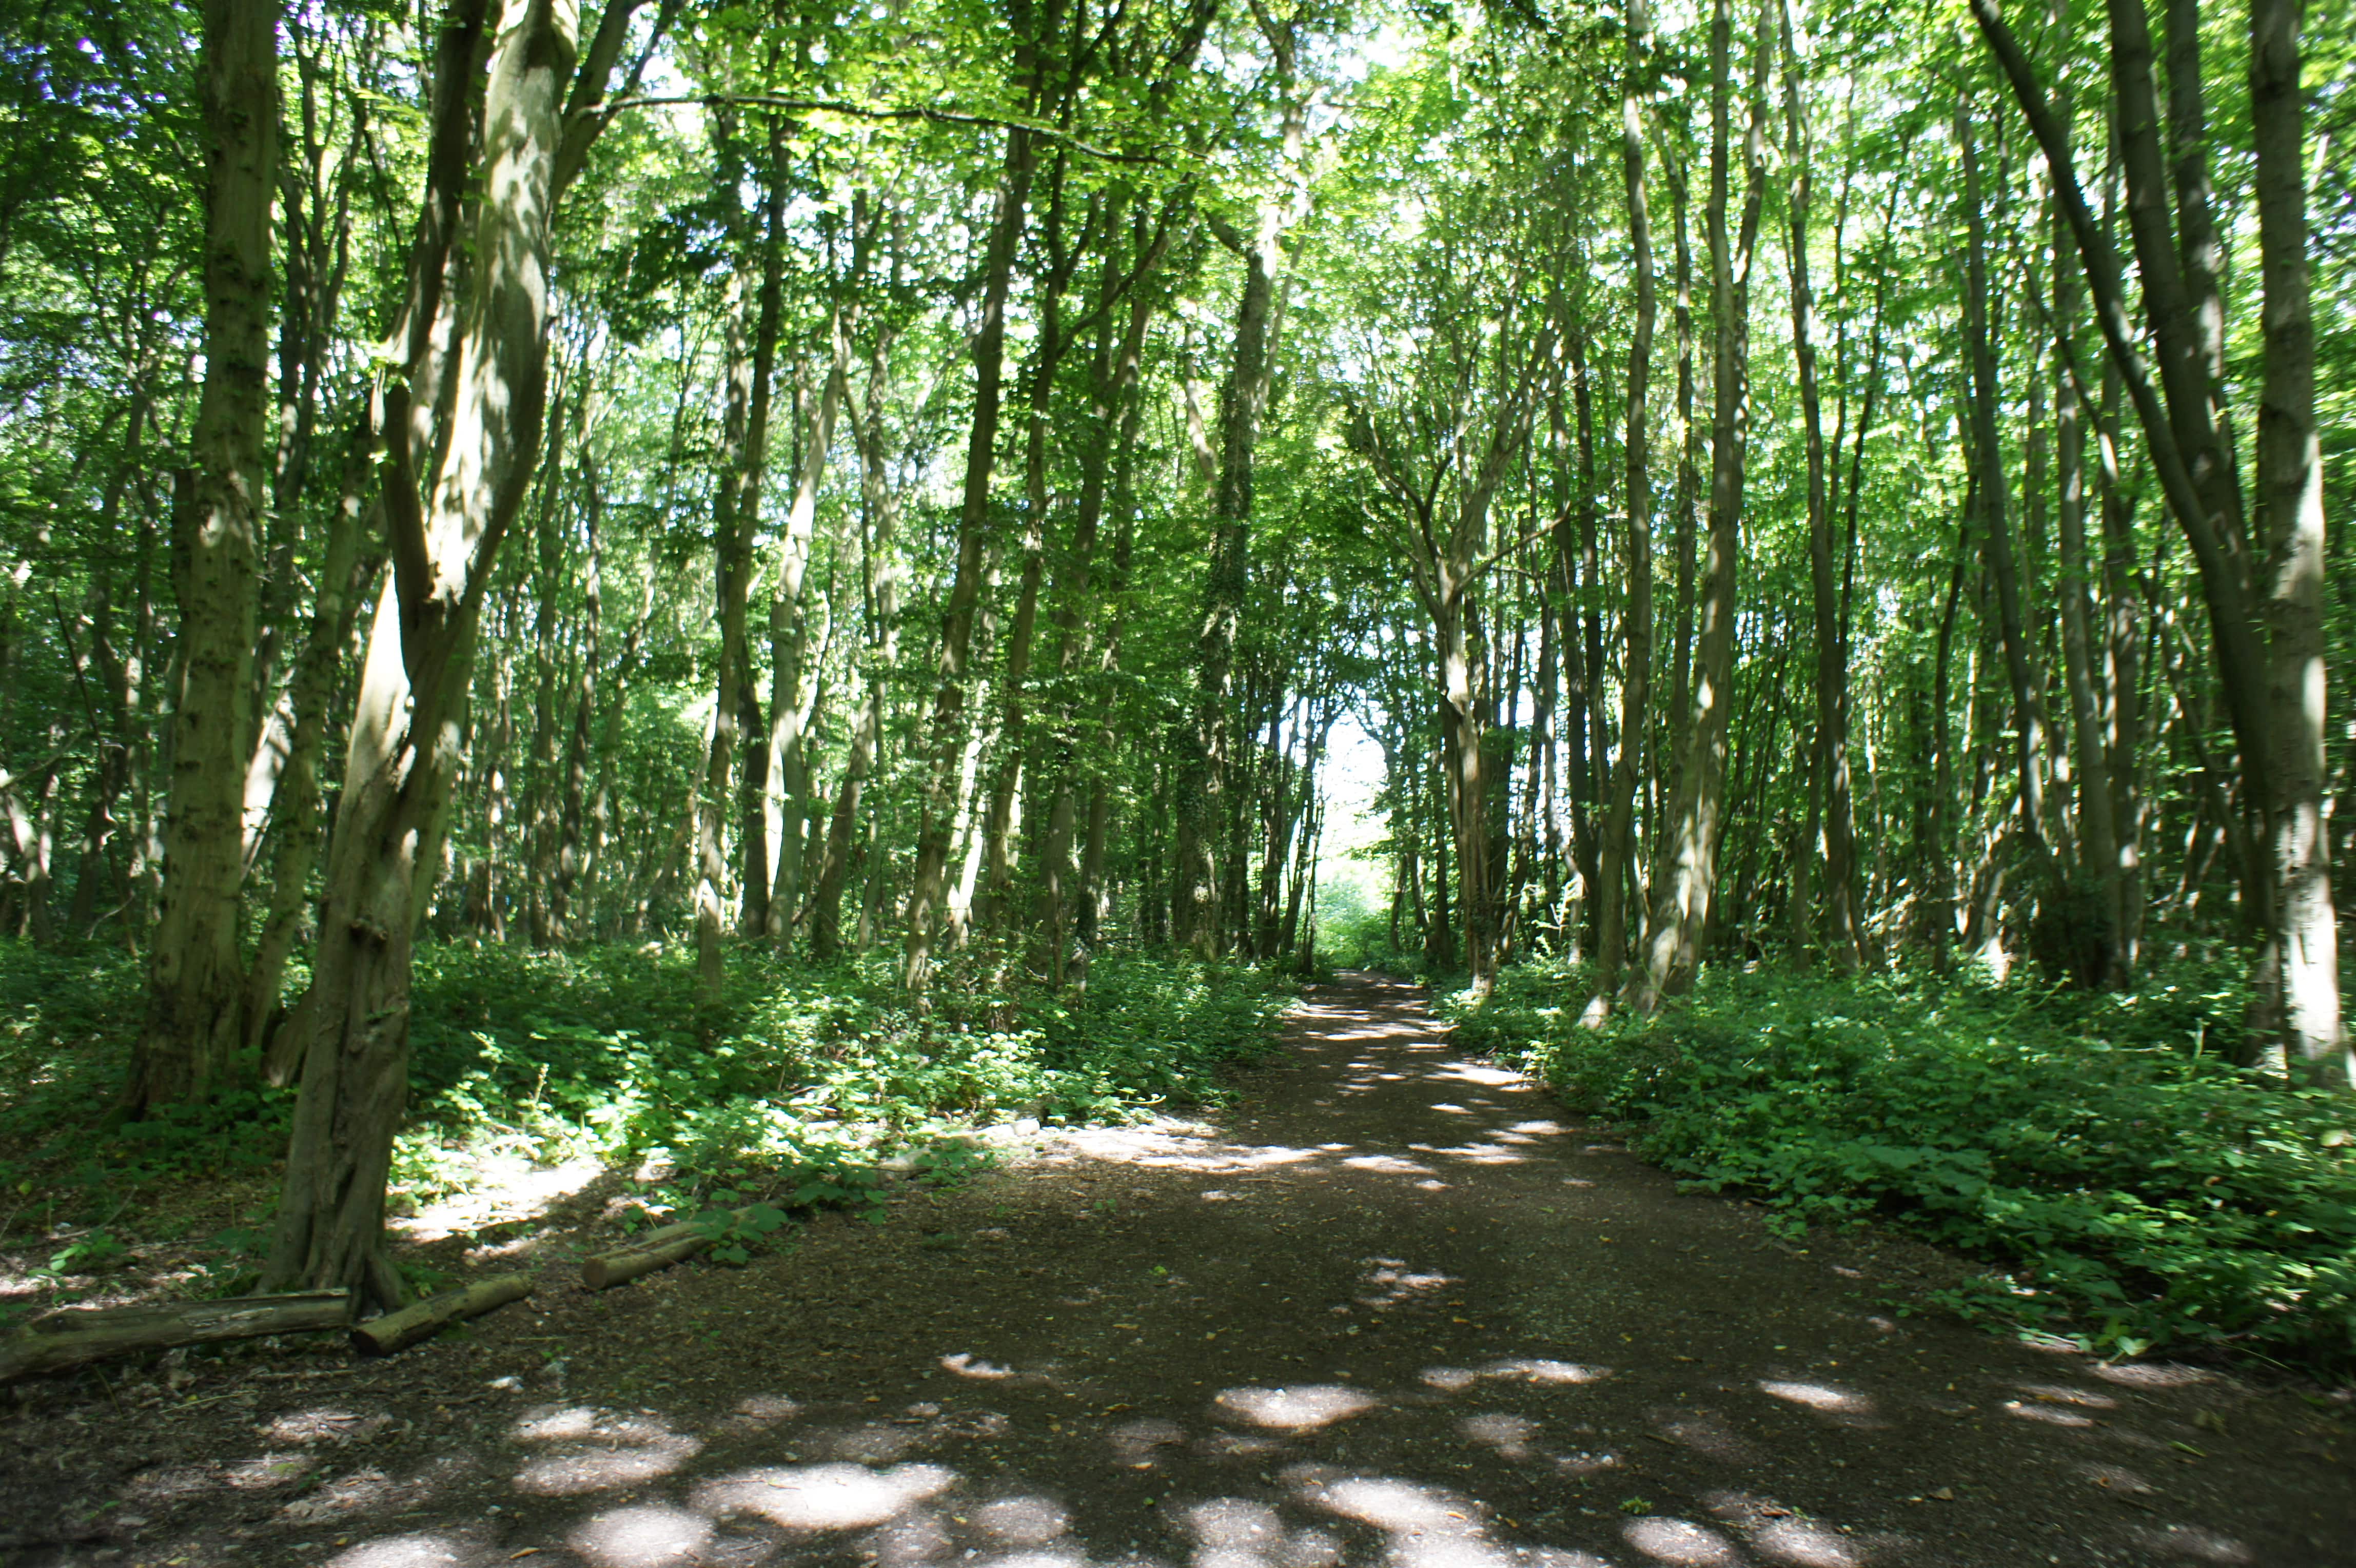 Path through Bredhurst woodland. Sun shining through tall trees.